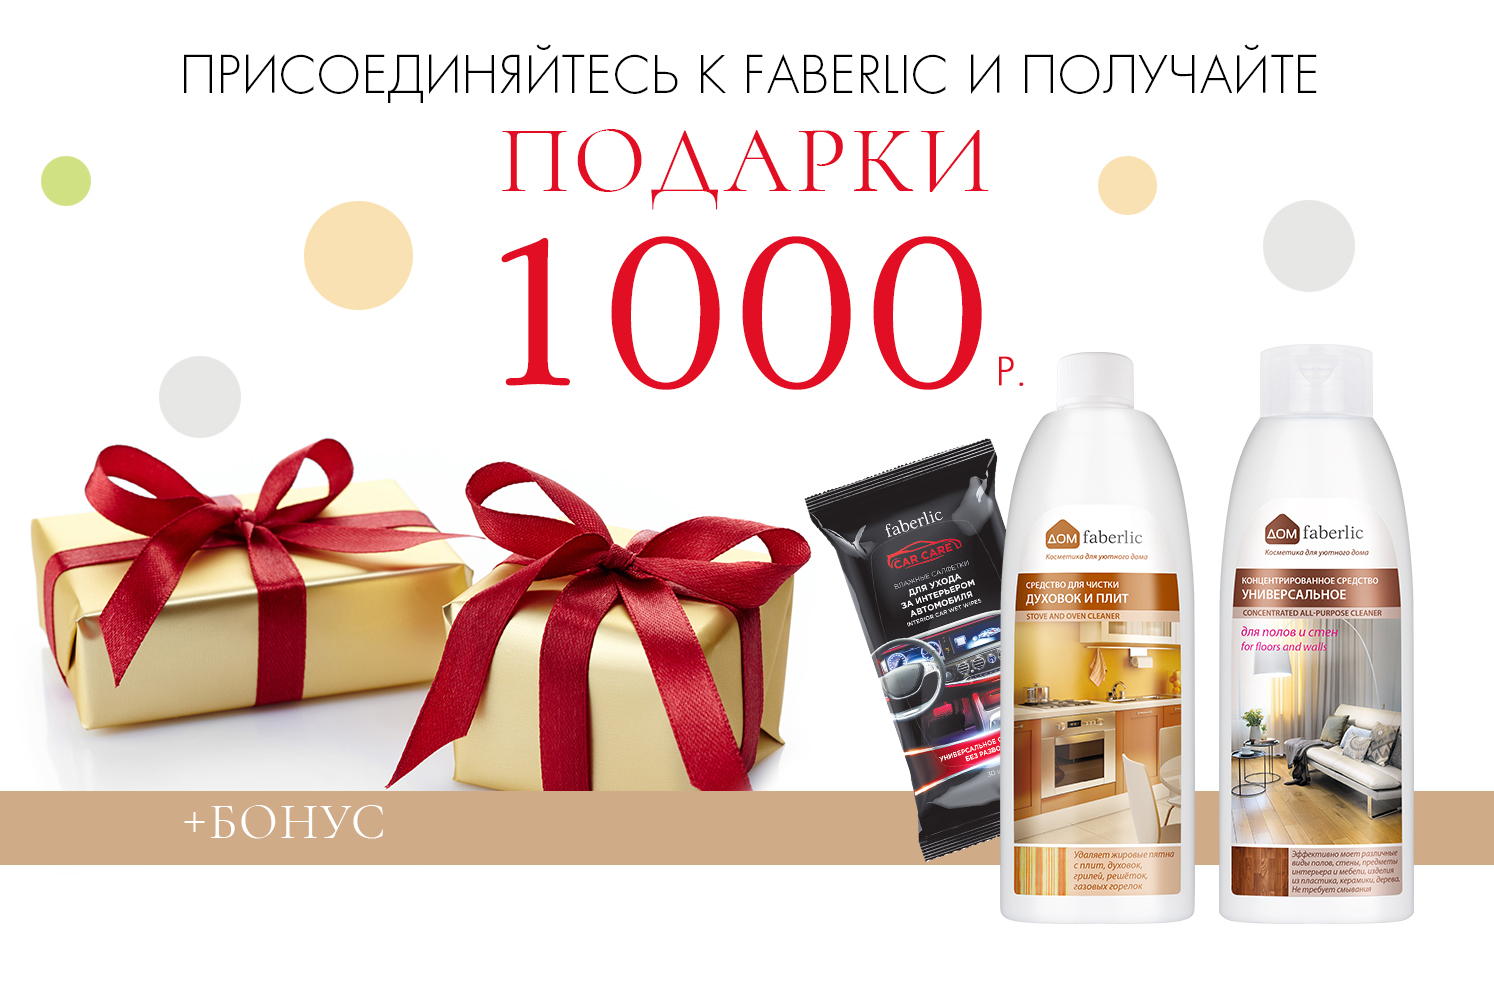 1000 рублей в подарок при регистрации